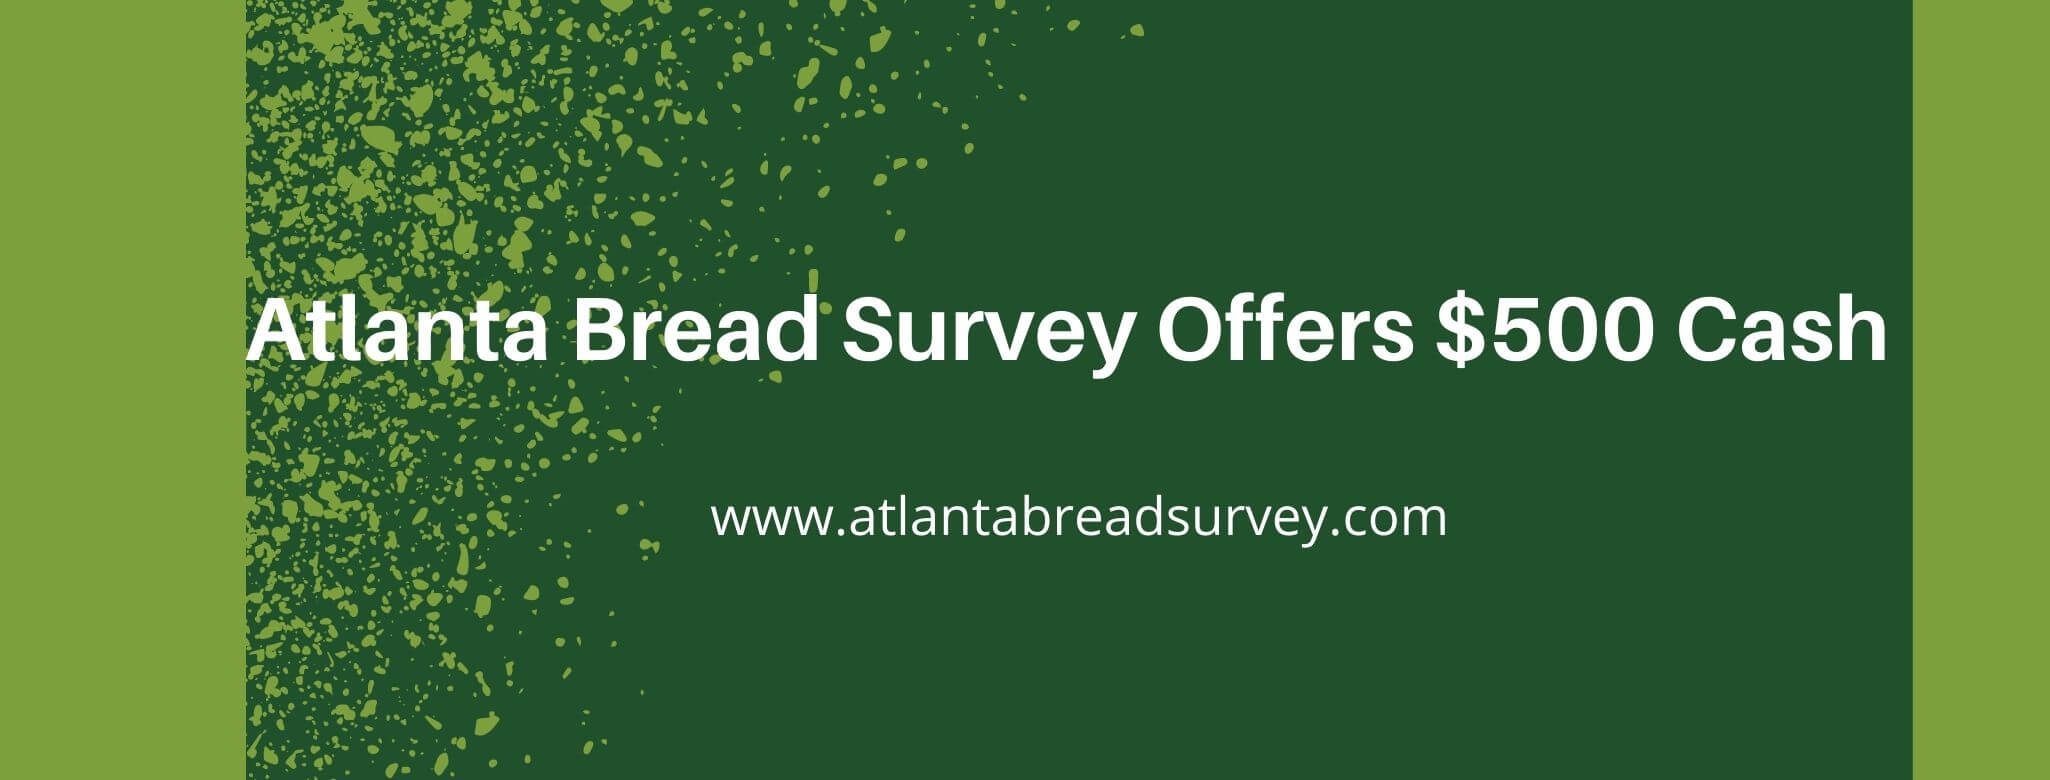 atlanta bread survey